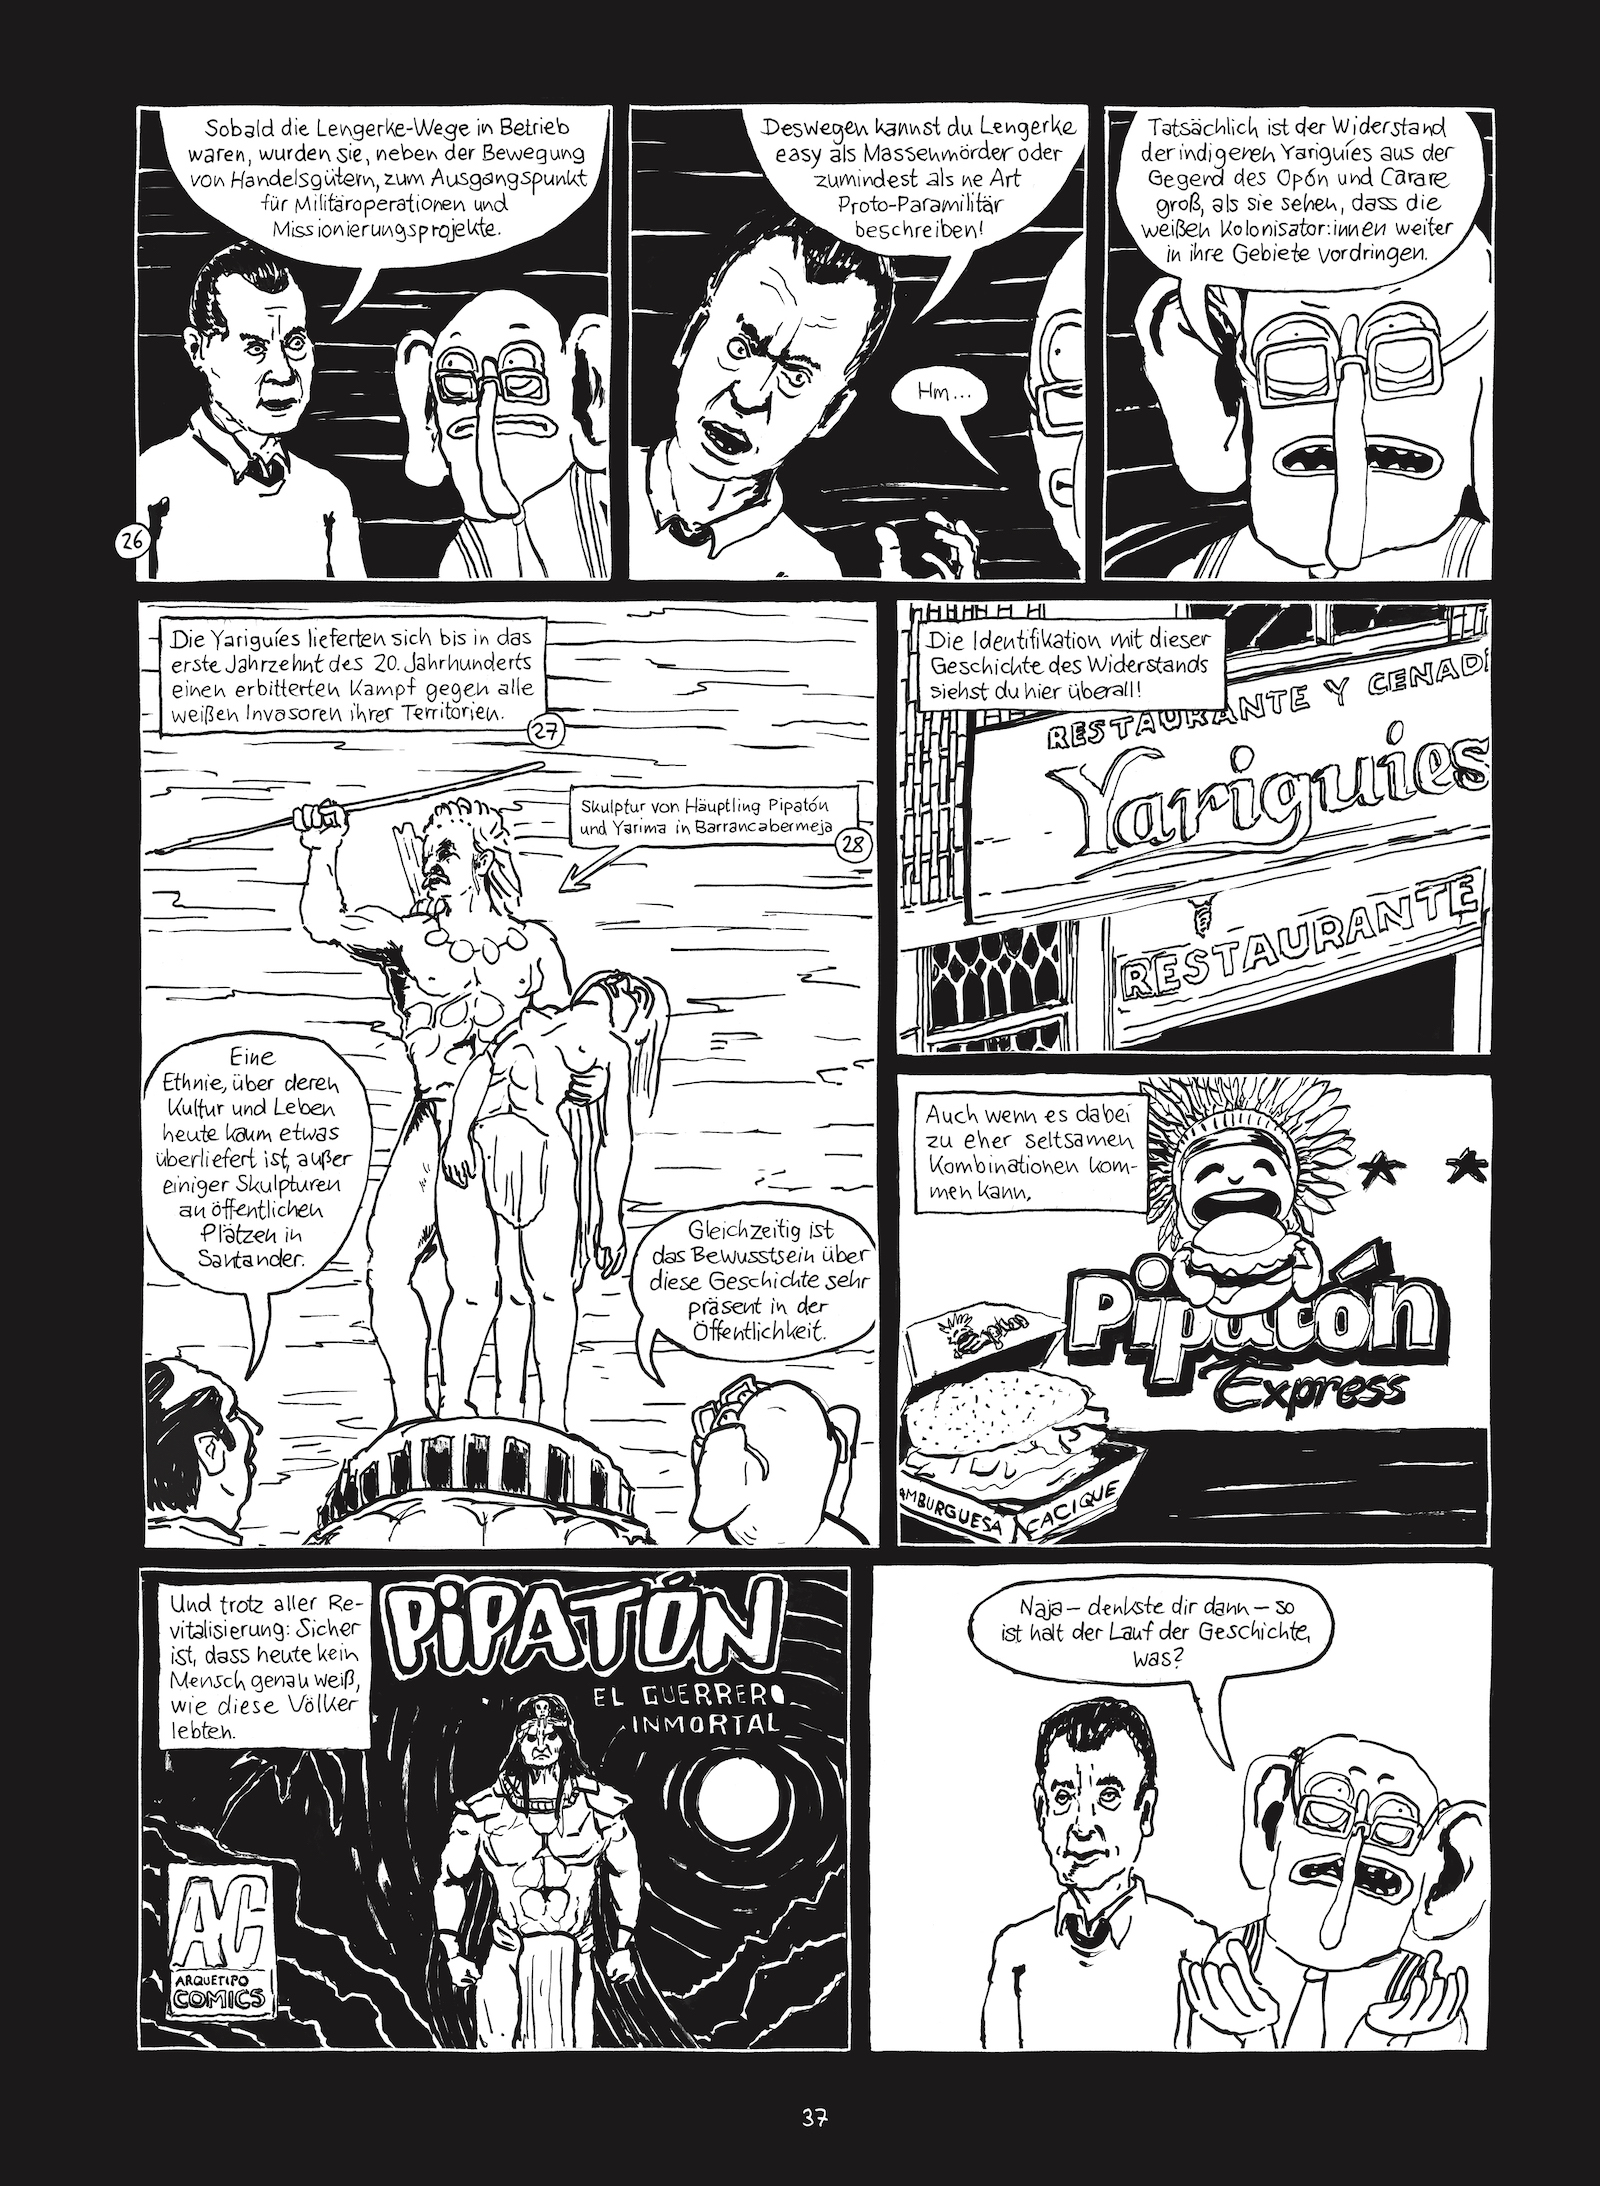 Seite 37 von Christian Diaz Orejarenas Comic "Otras Rayas"